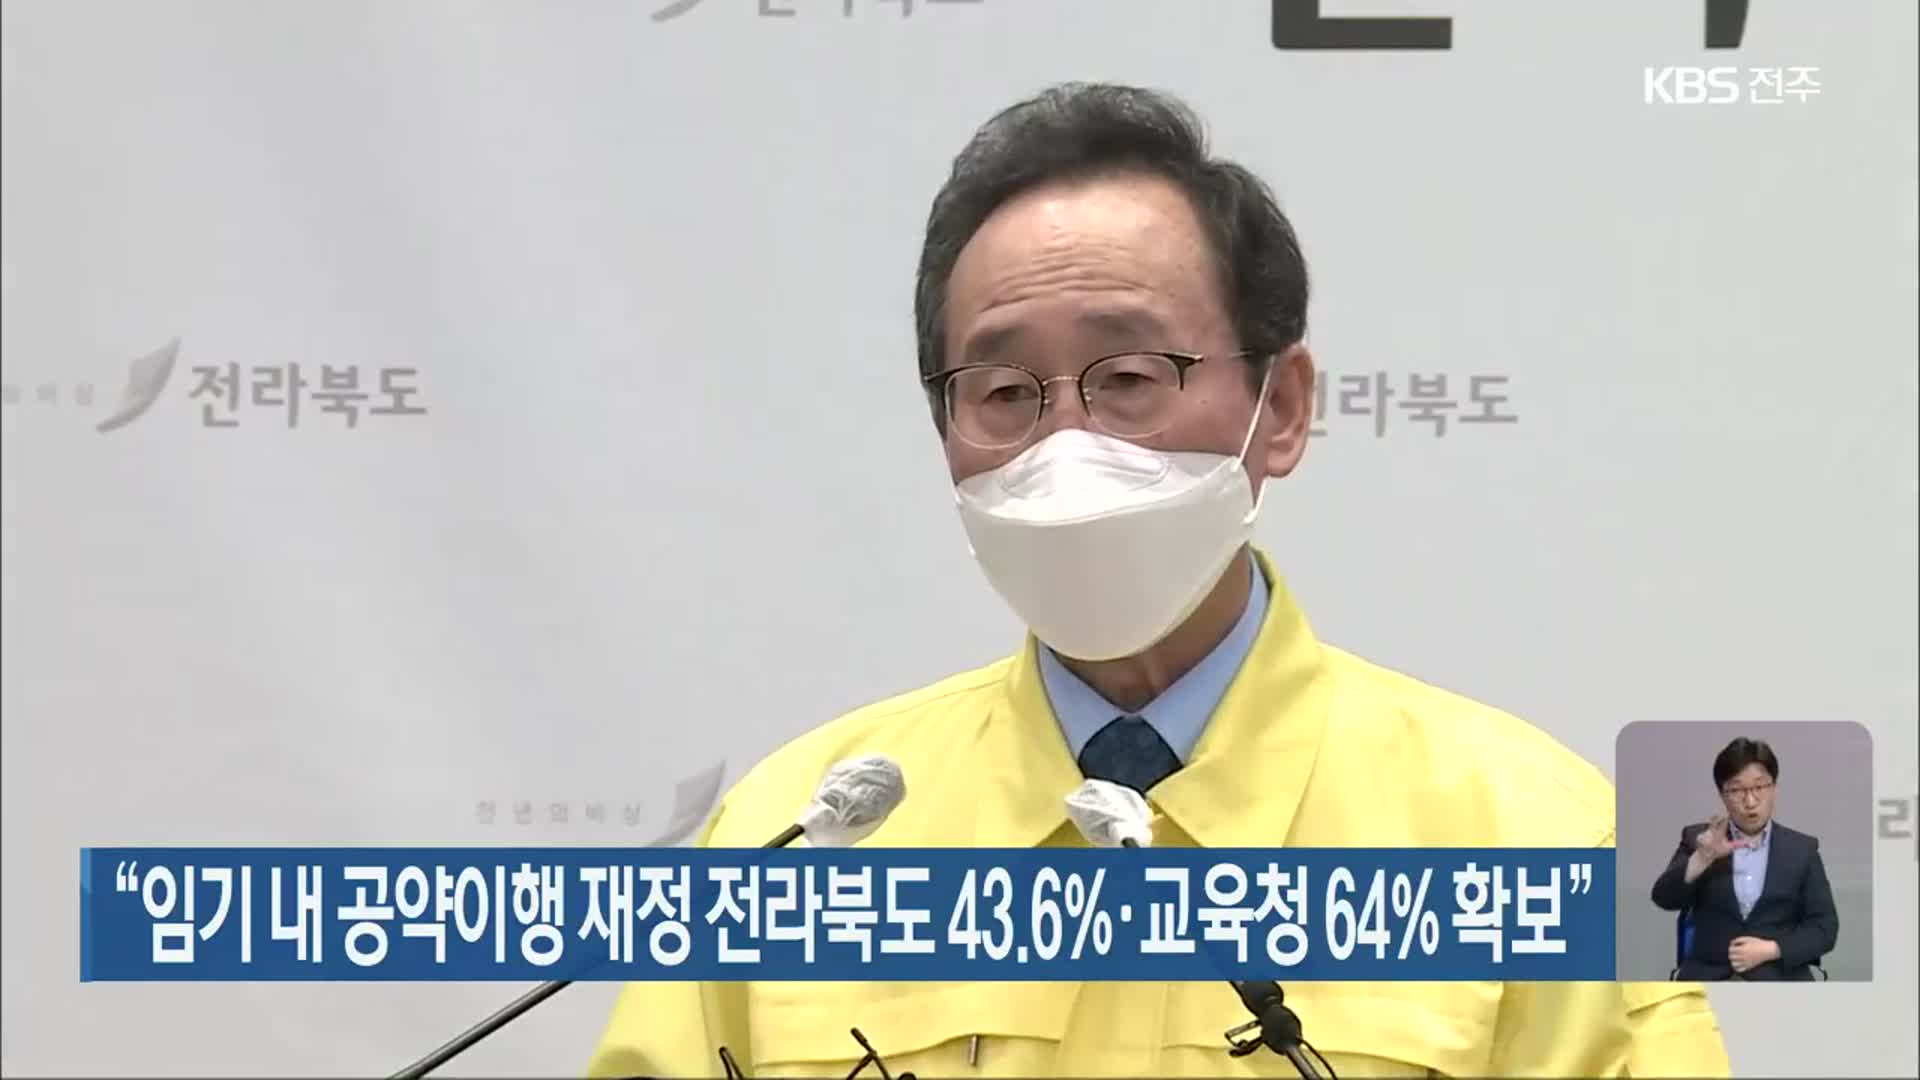 “임기 내 공약이행 재정 전라북도 43.6%·교육청 64% 확보”